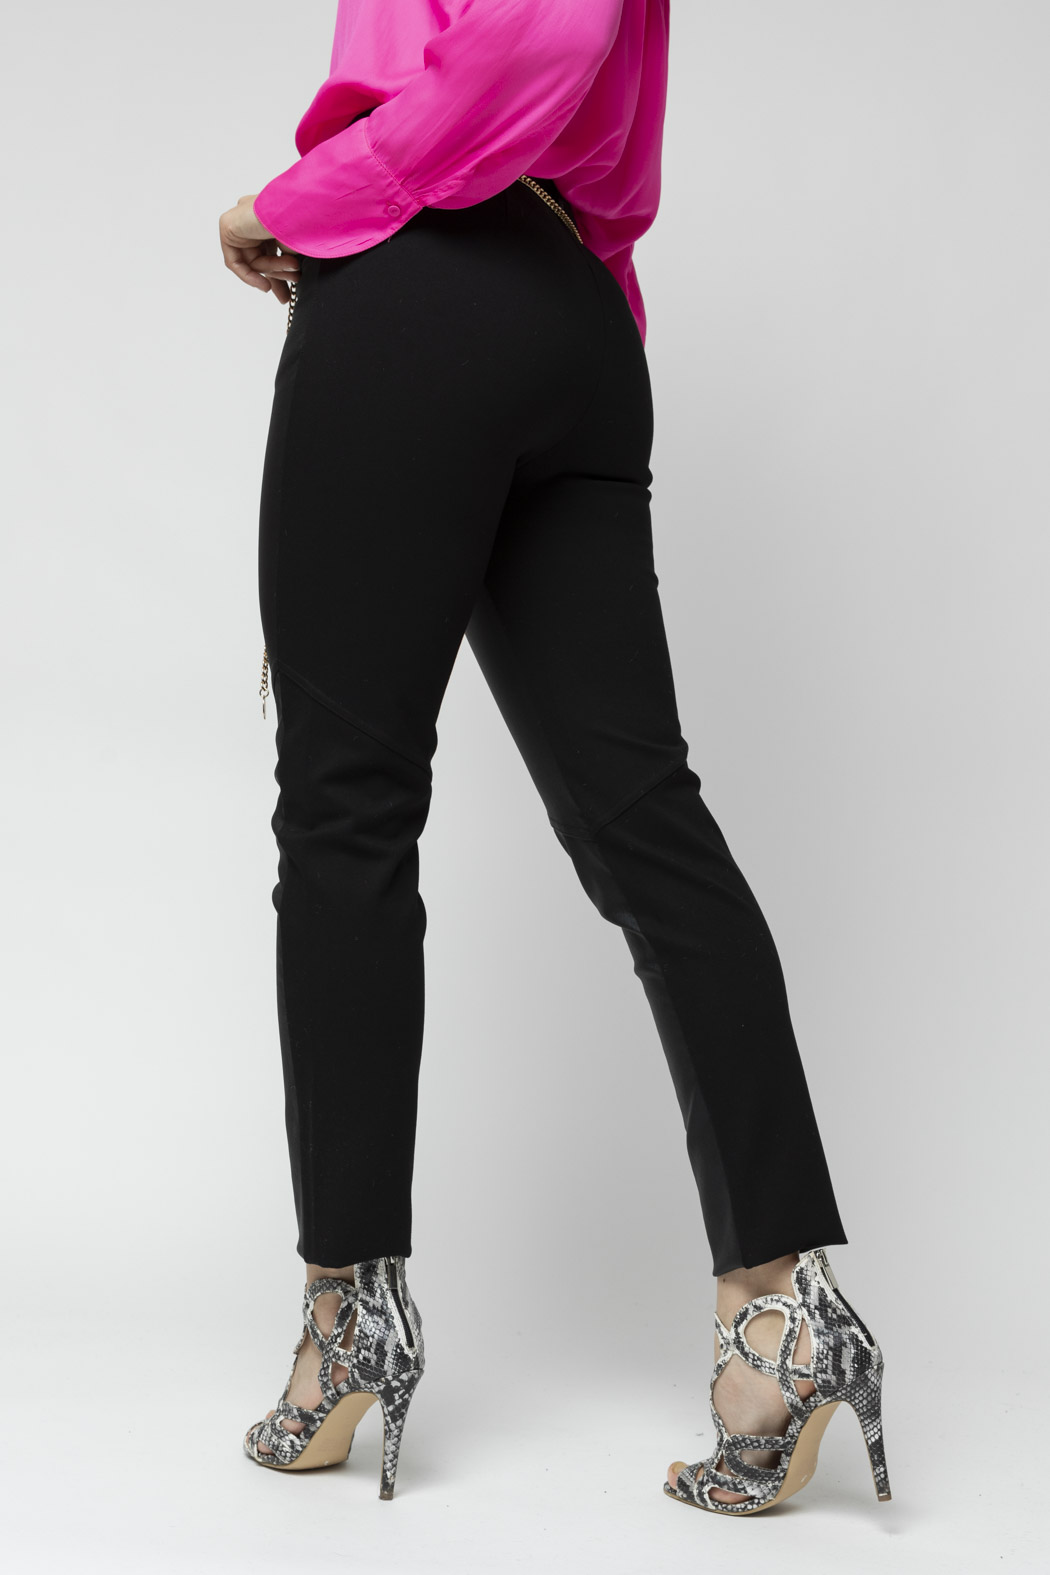 Buy Zara Cotton Solid Flat Front Full Length Regular Waist Black Skinny  Trouser Online  Etashee